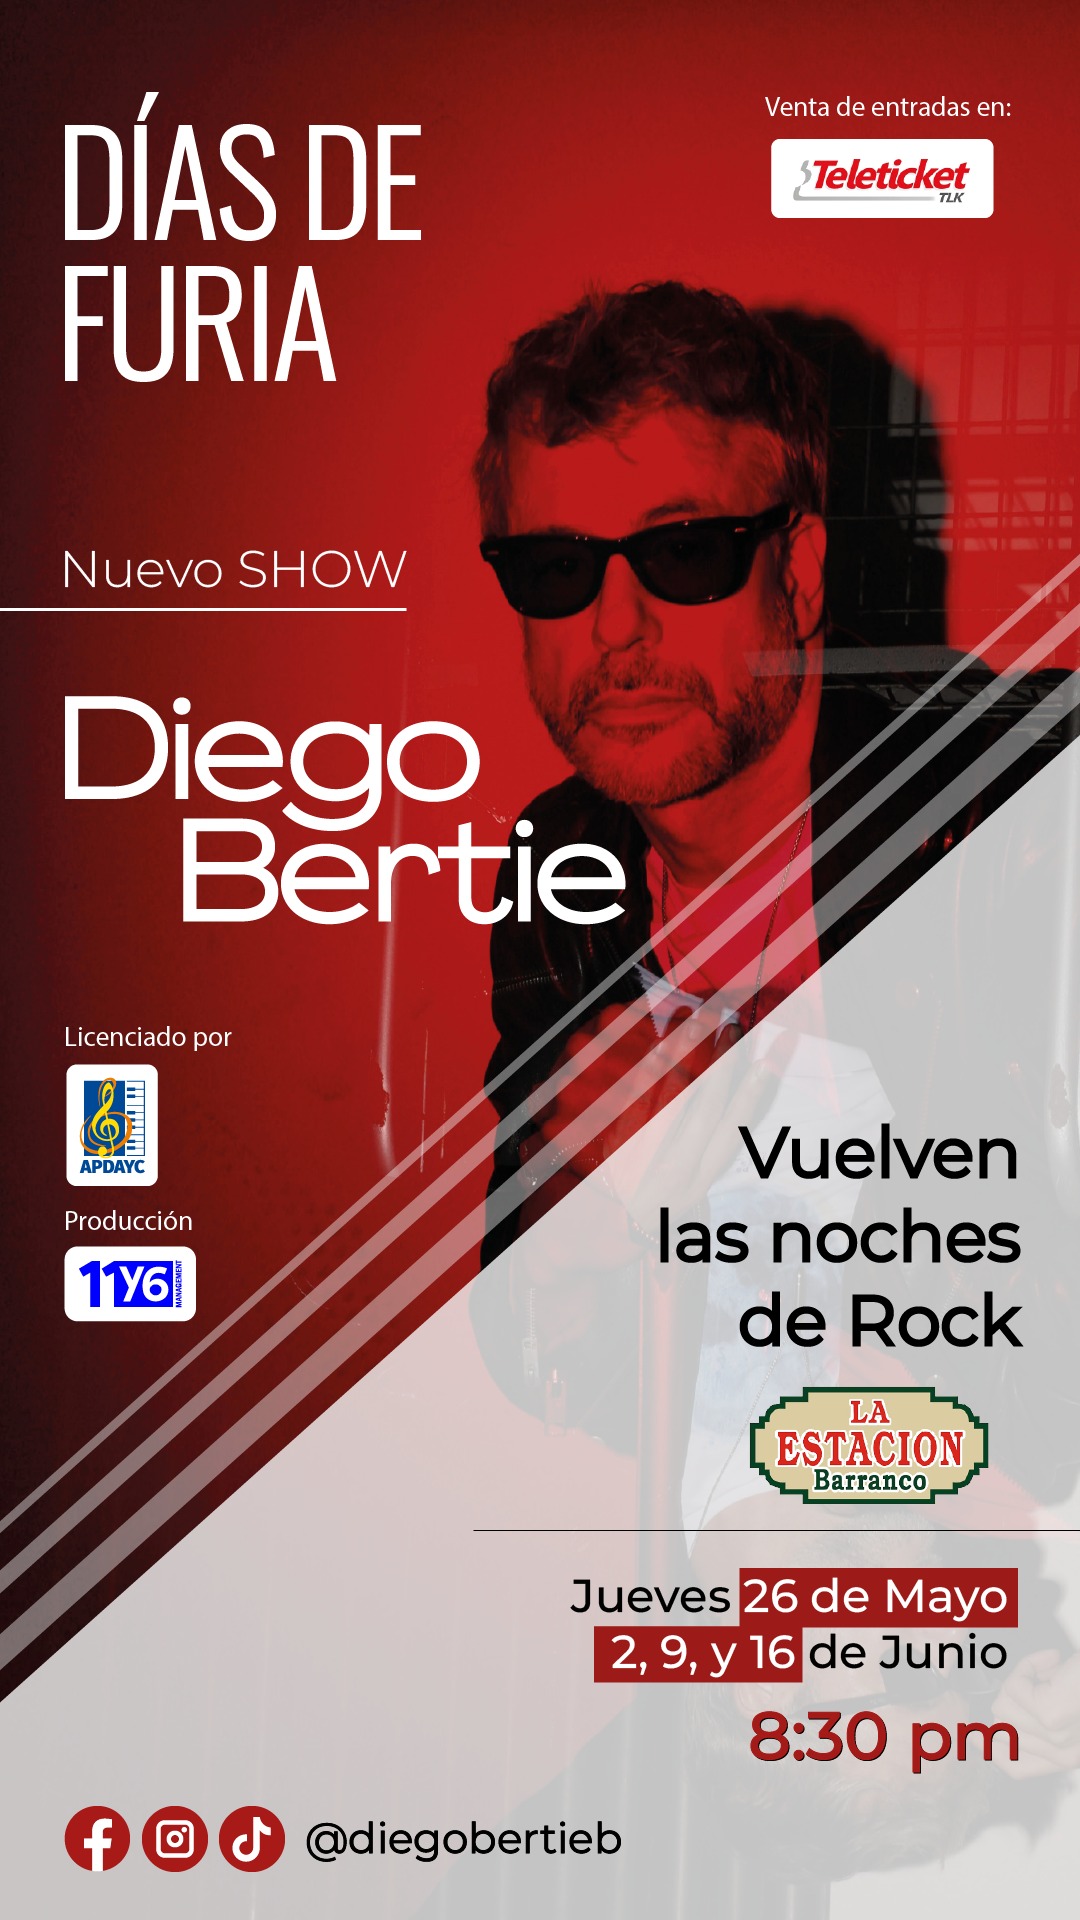 Diego Bertie regresa a la música y a los escenarios después de 25 años